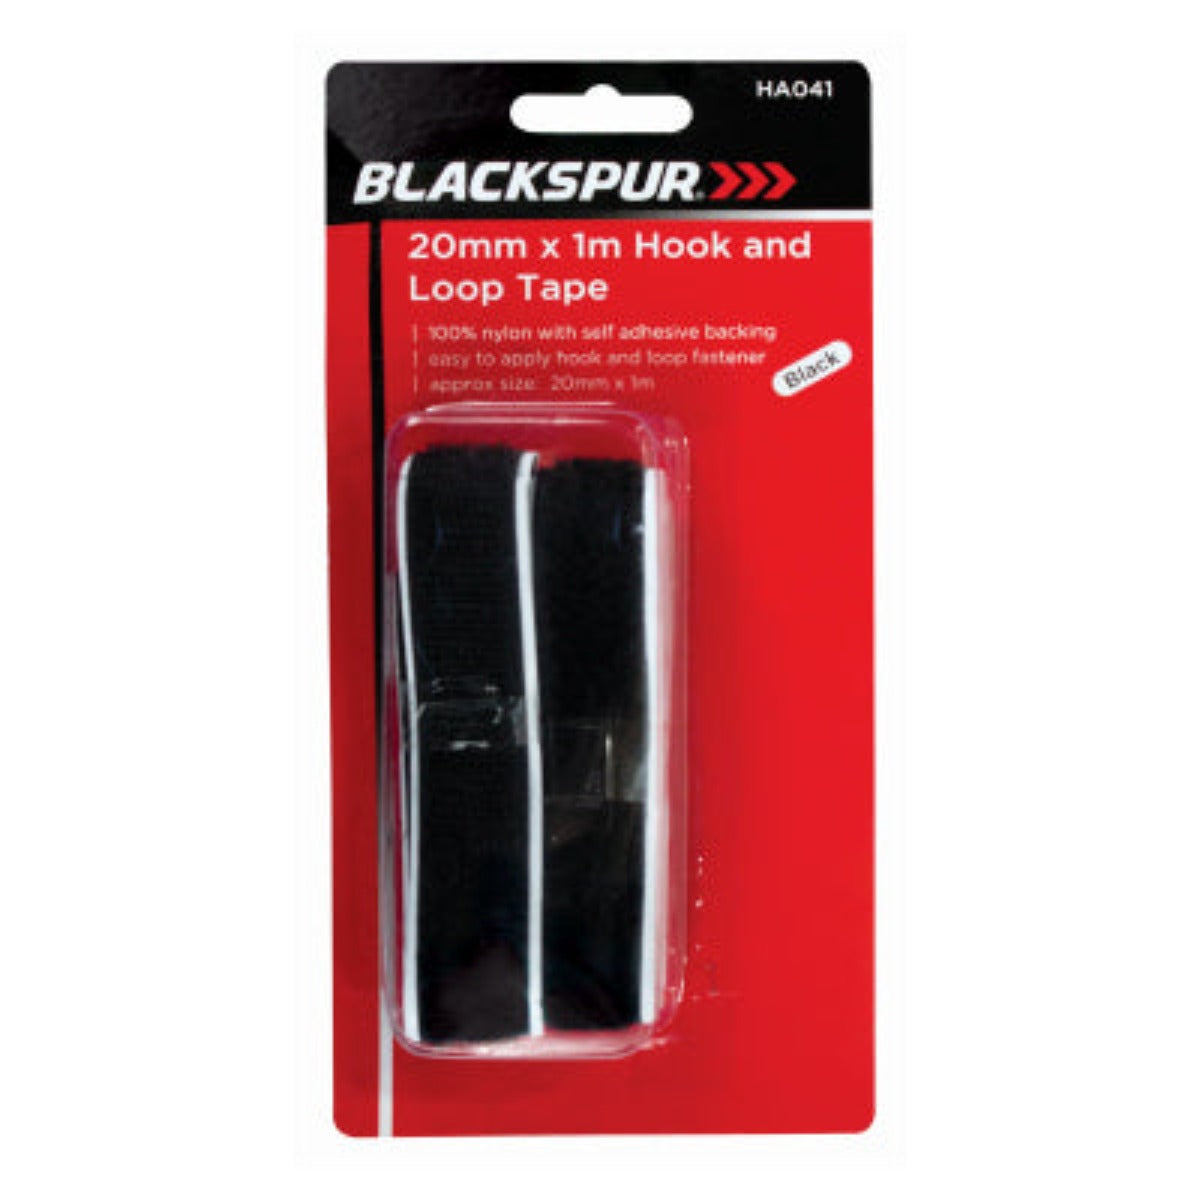 BLACKSPUR 20mm X 1m Hook And Loop Tape - Black